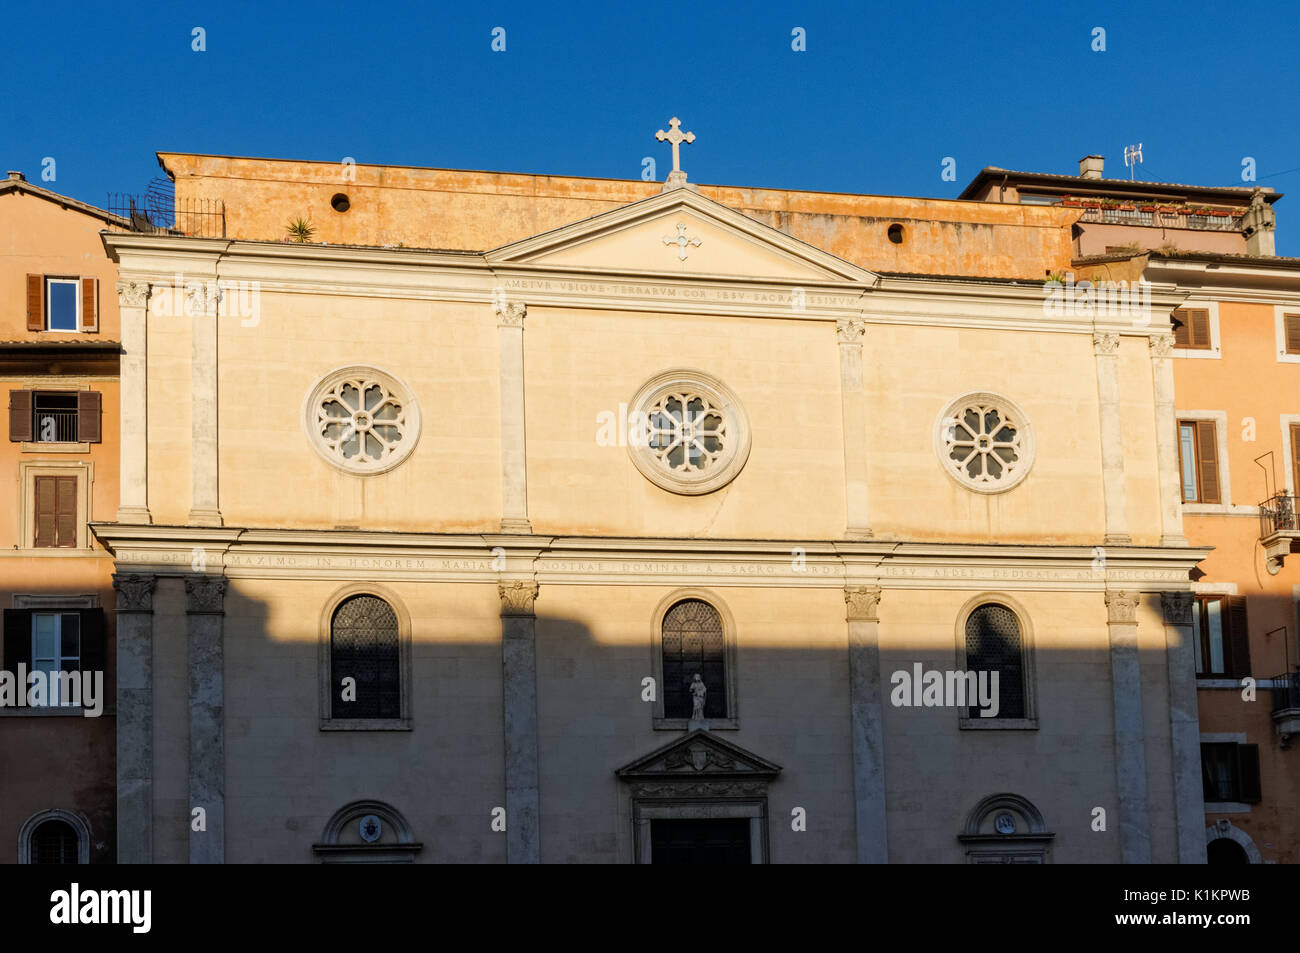 Nostra Signora del Sacro Cuore church in the Piazza Navona, Rome, Italy Stock Photo